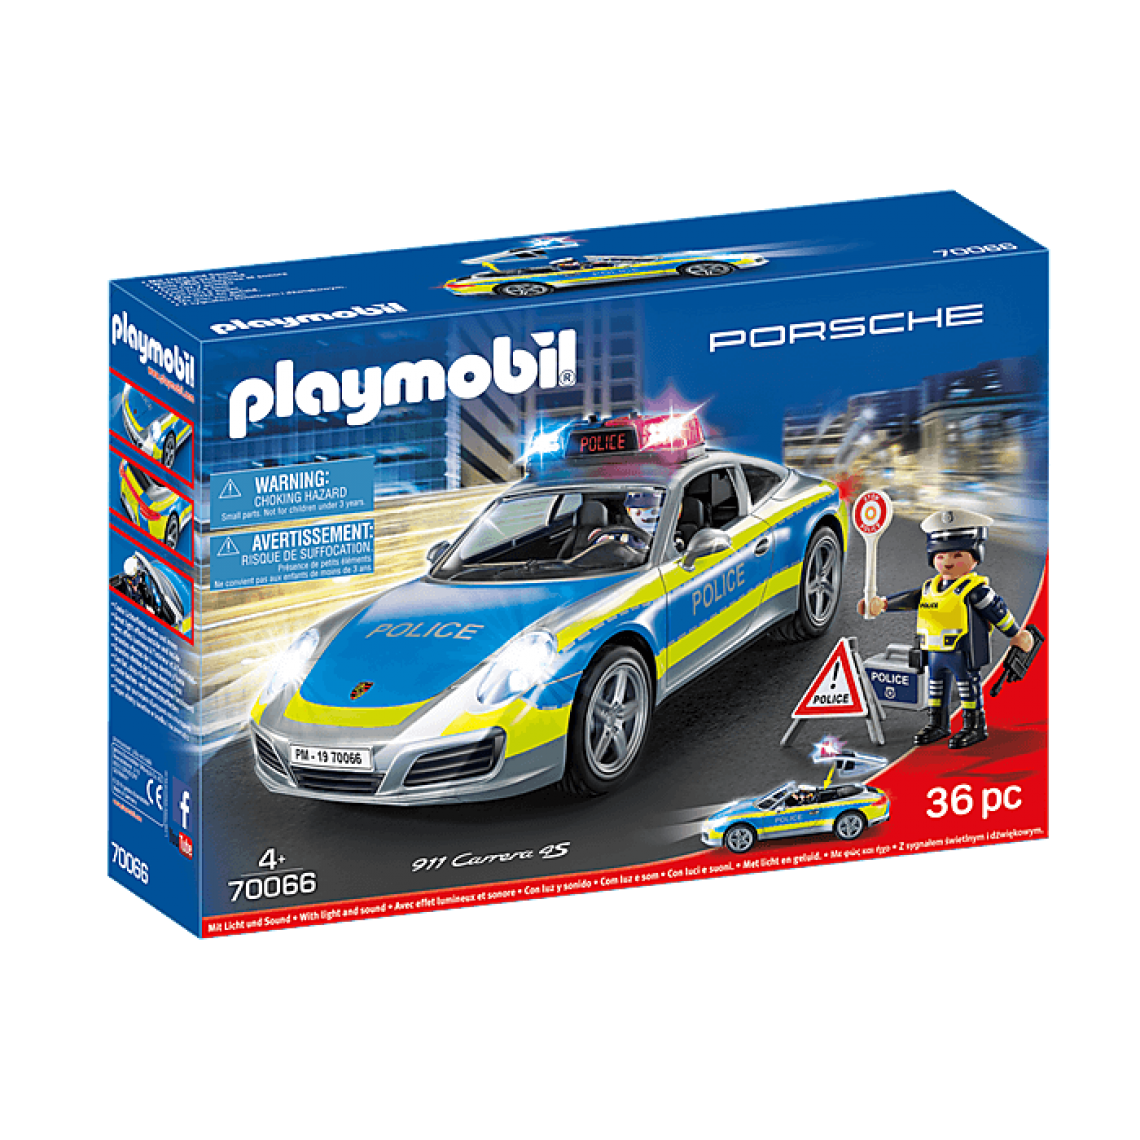 Playmobil - 70066 Playmobil Porsche 911 Carrera 4S Police - Playmobil